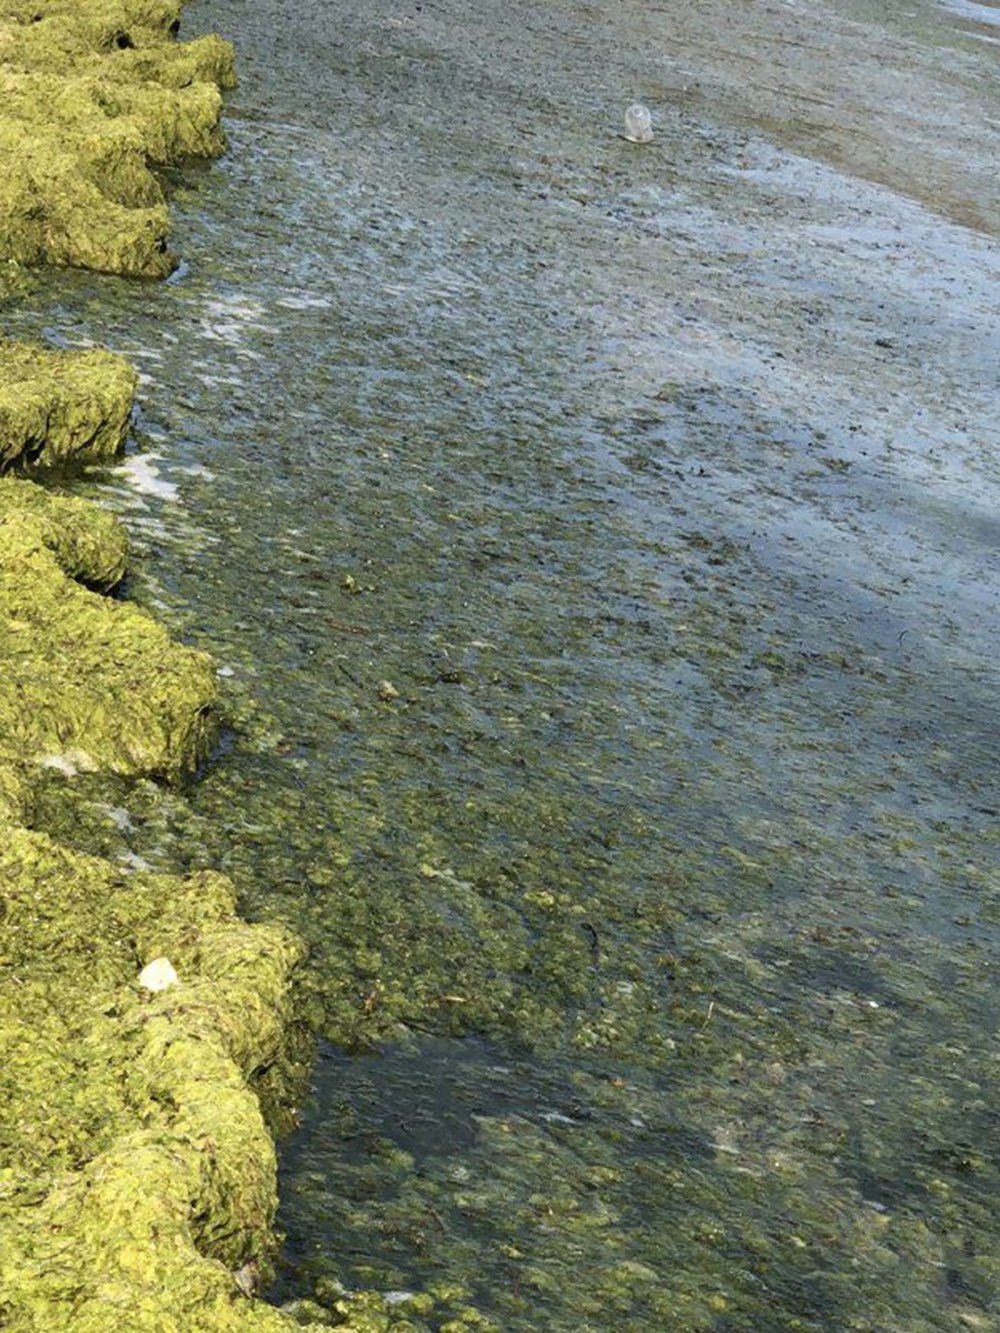 Beyşehir Gölü'nde alg patlaması: Suyun rengi yeşile döndü - 3